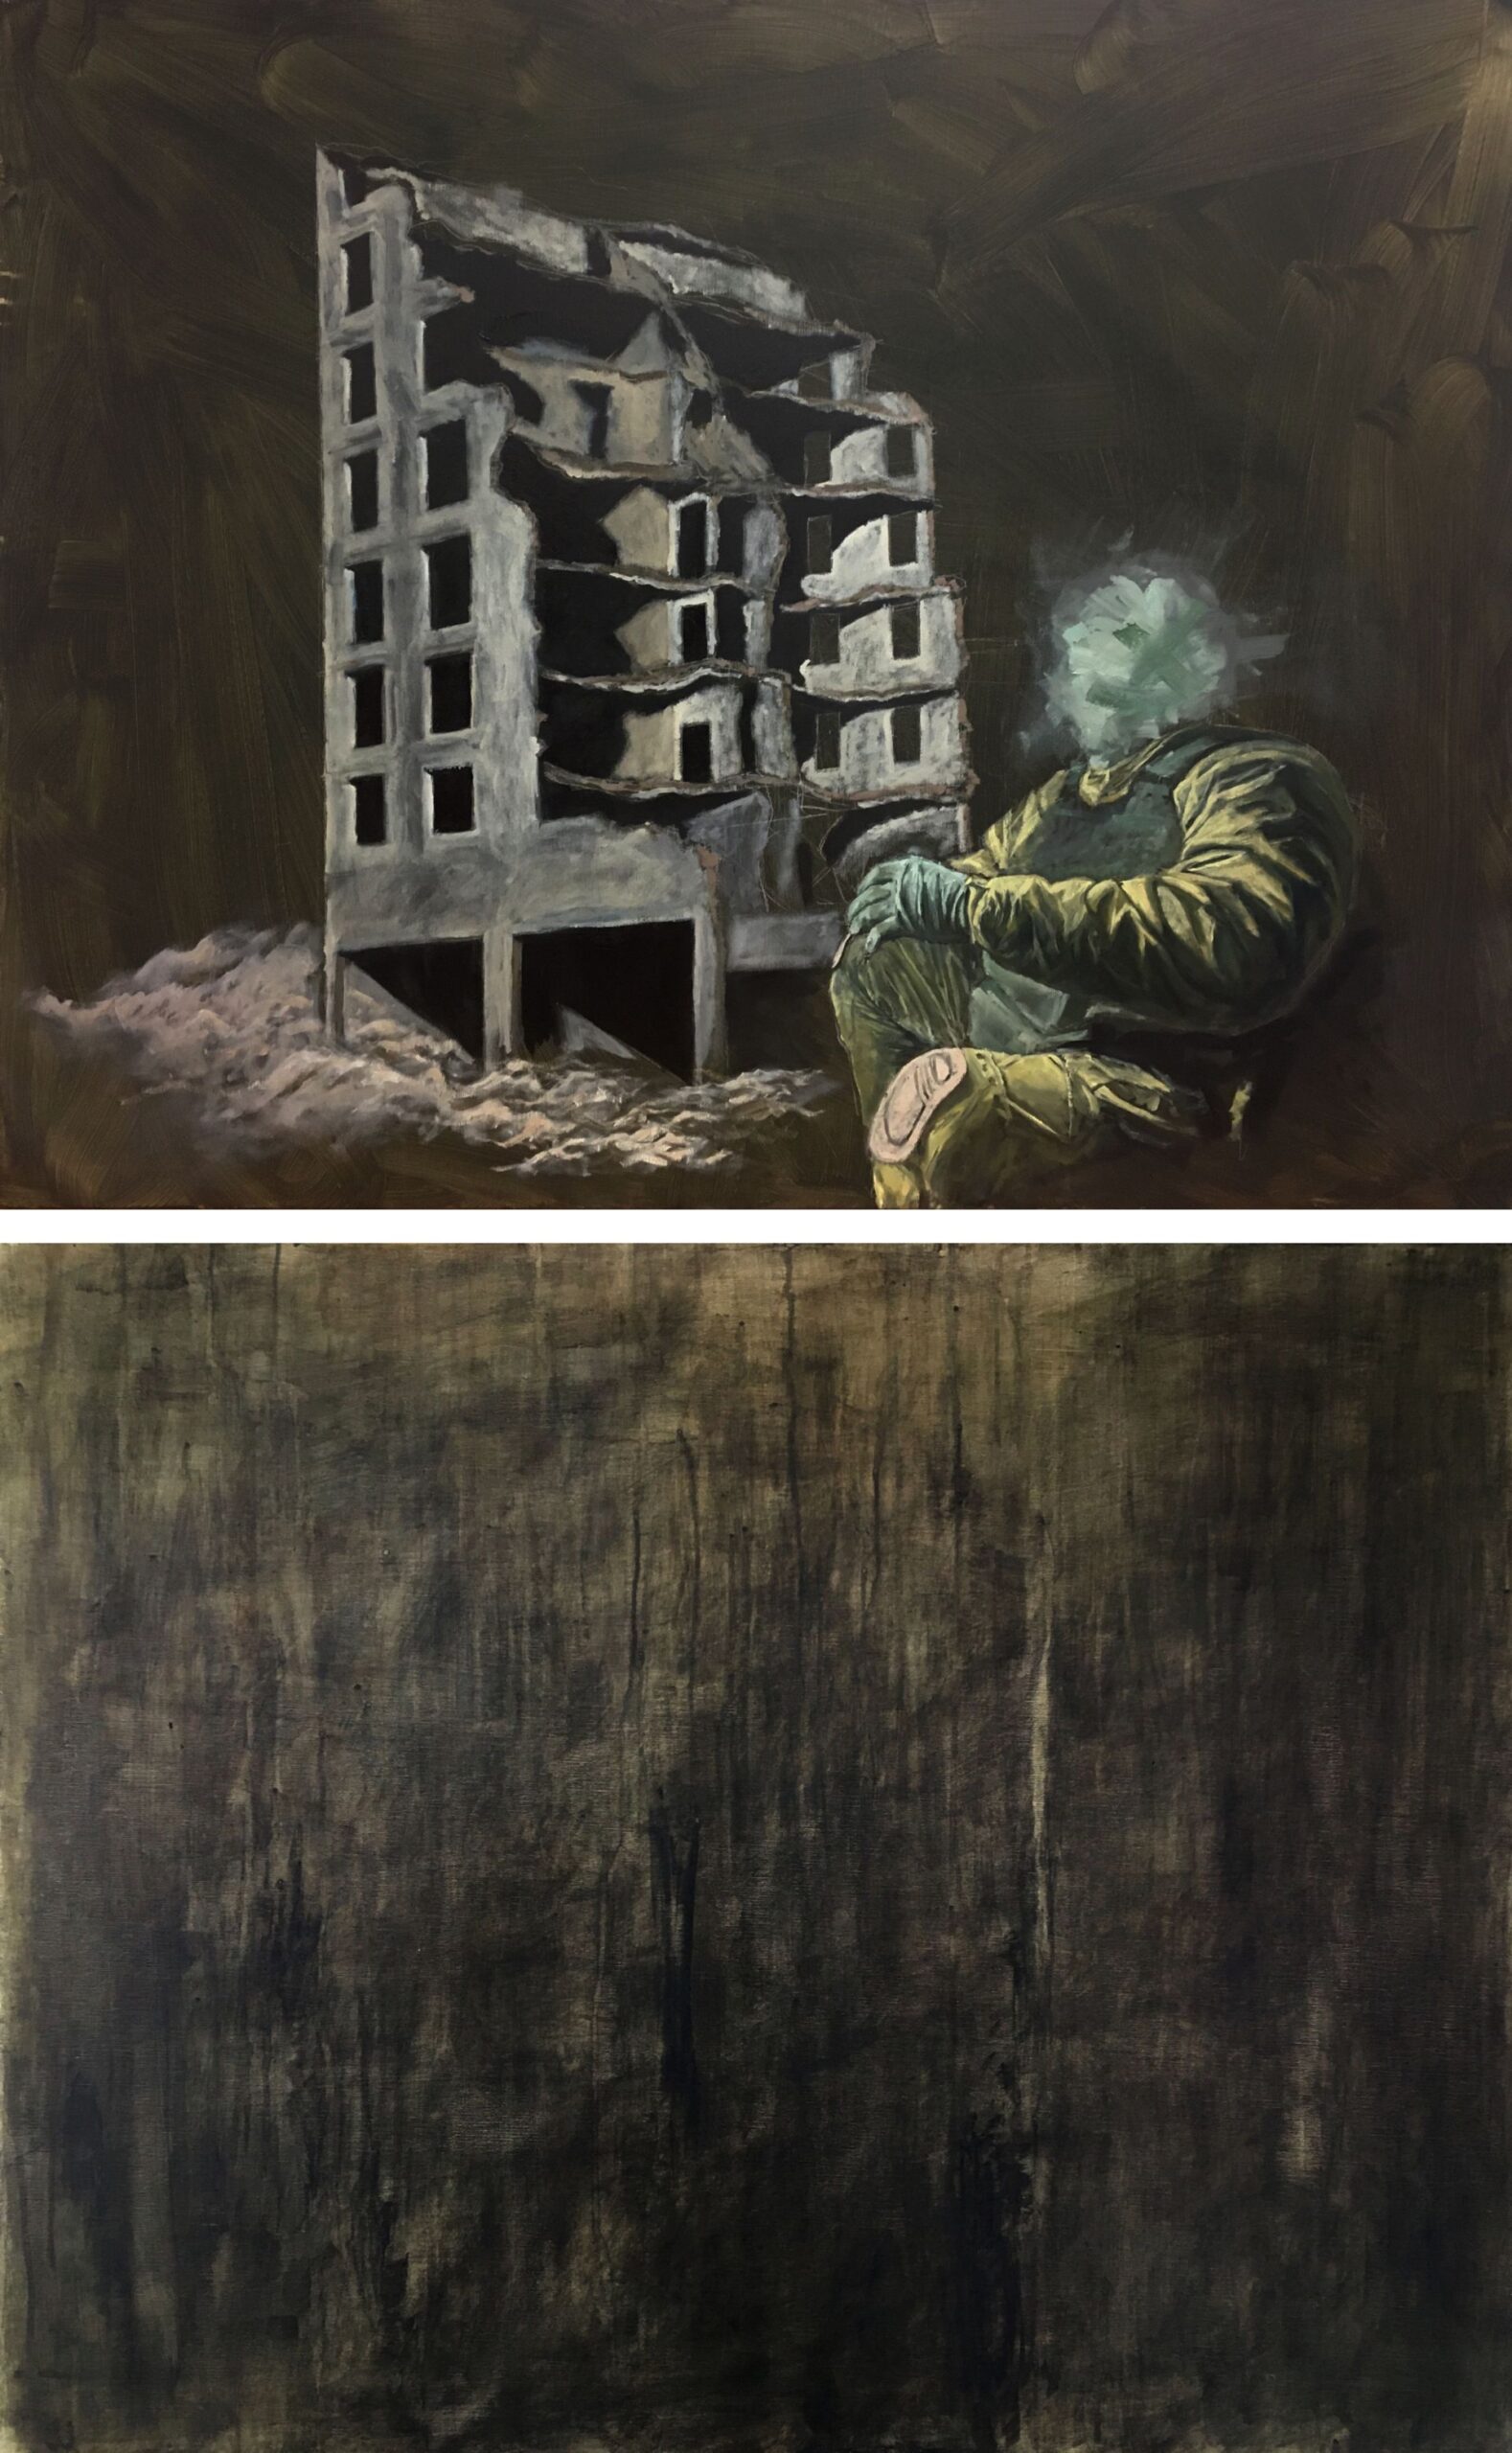 Żołnierz na tle ruin. Obraz poświęcony wojnie w Ukrainie.